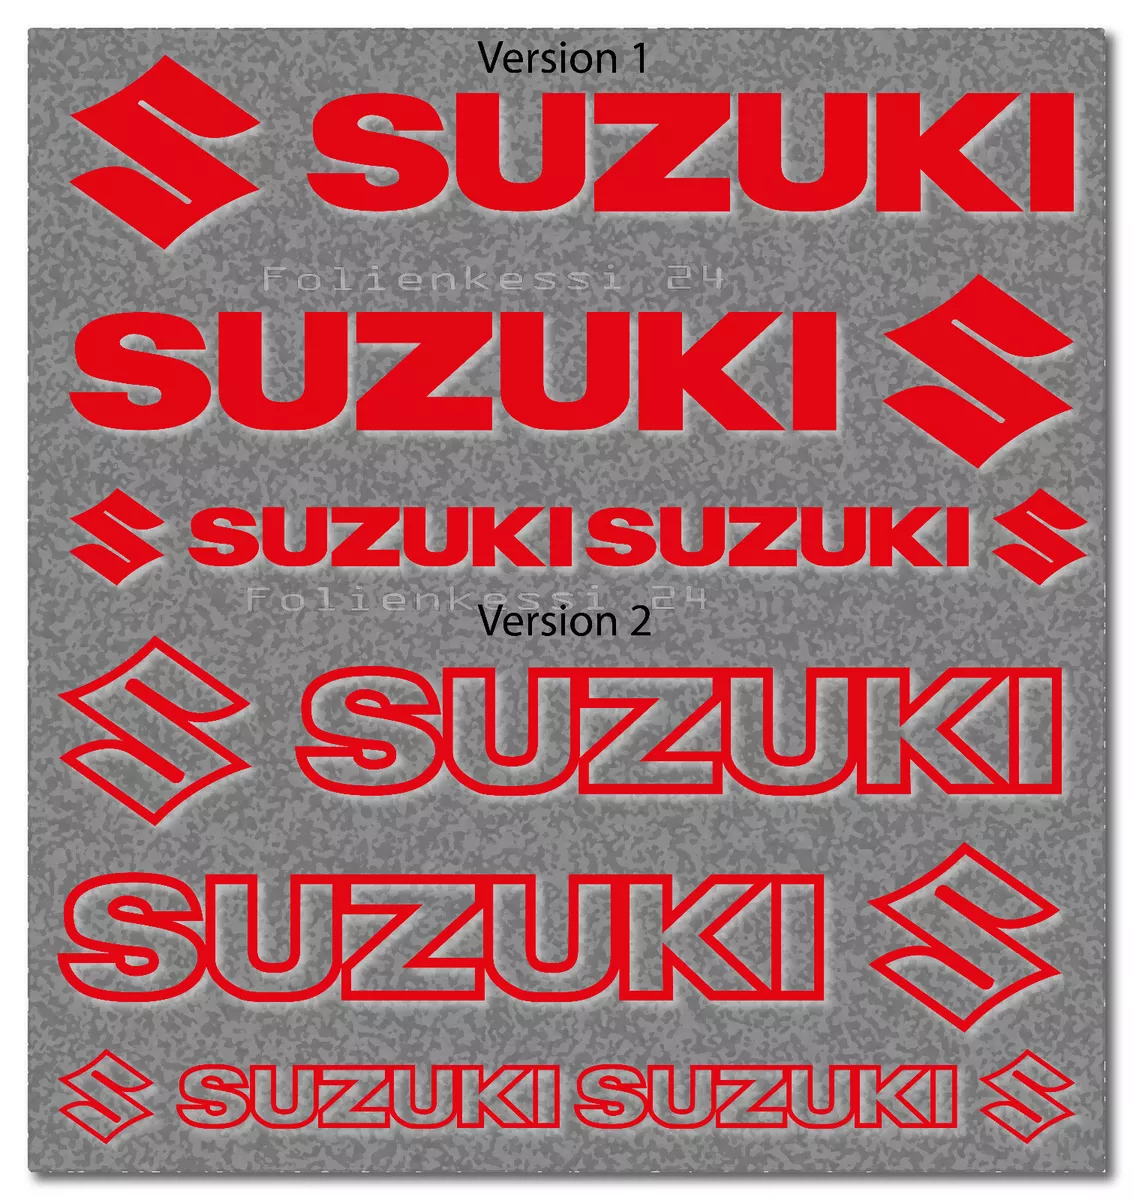 4 Suzuki Aufkleber 200/100mm 2 Versionen Racing Tuning Styling 38